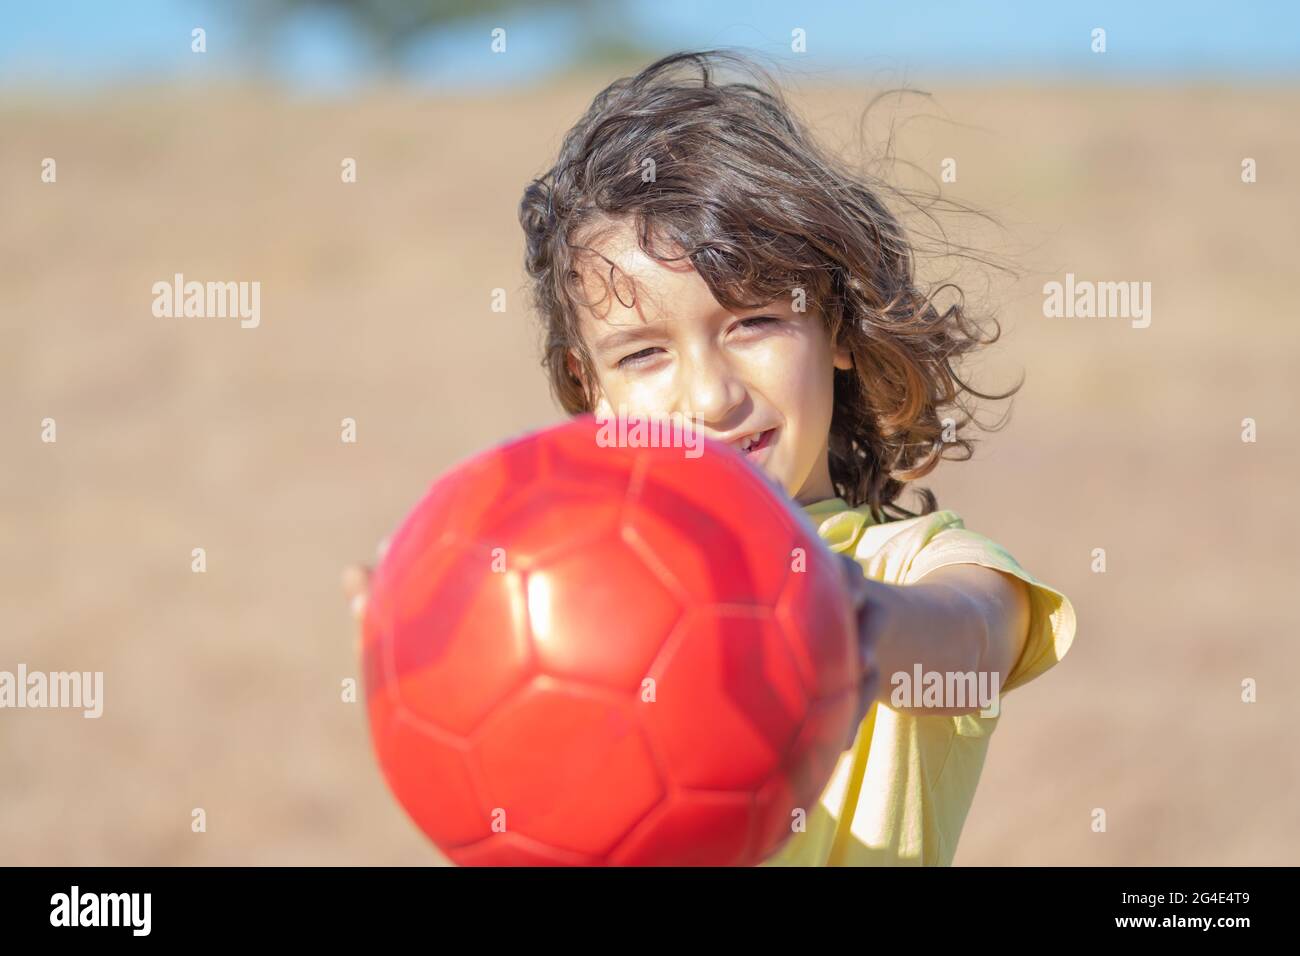 un petit garçon aux cheveux longs et un t-shirt jaune joue avec sa balle rouge dans un champ par une belle journée d'été Banque D'Images